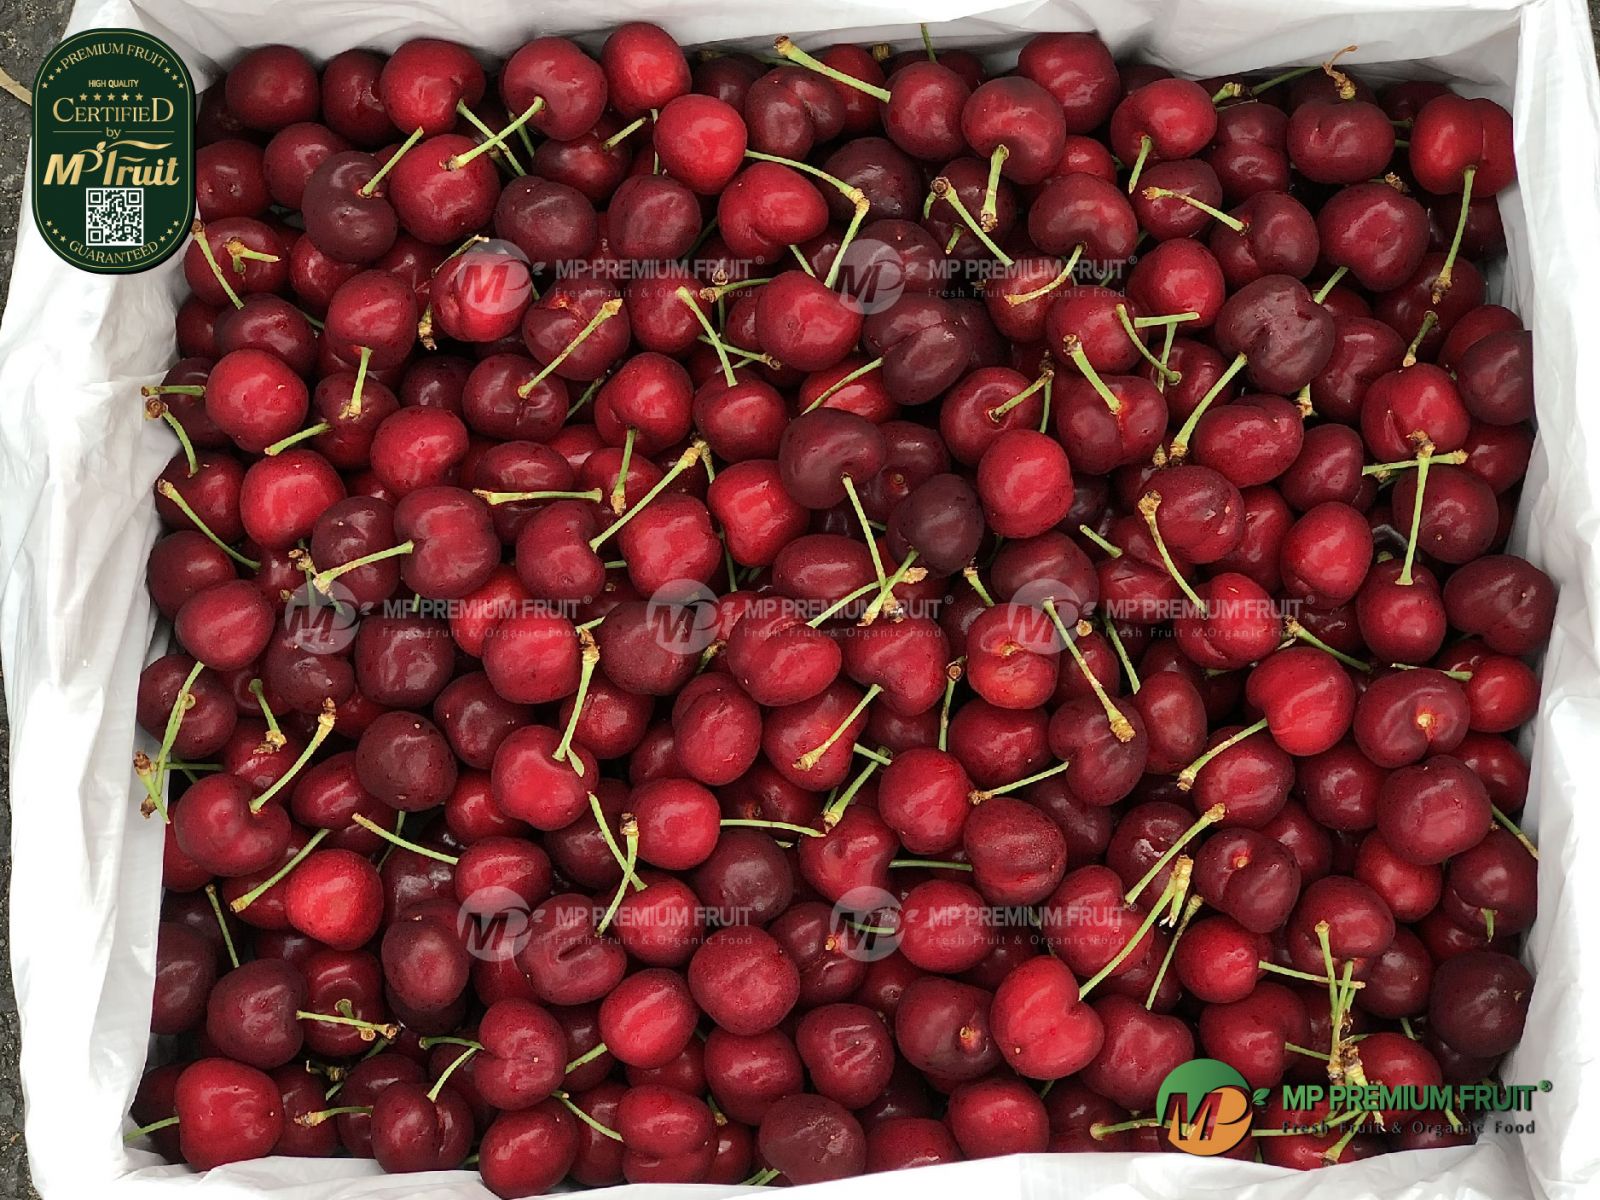 Cherry Đỏ Mỹ Size 9.5 tại MP Fruit